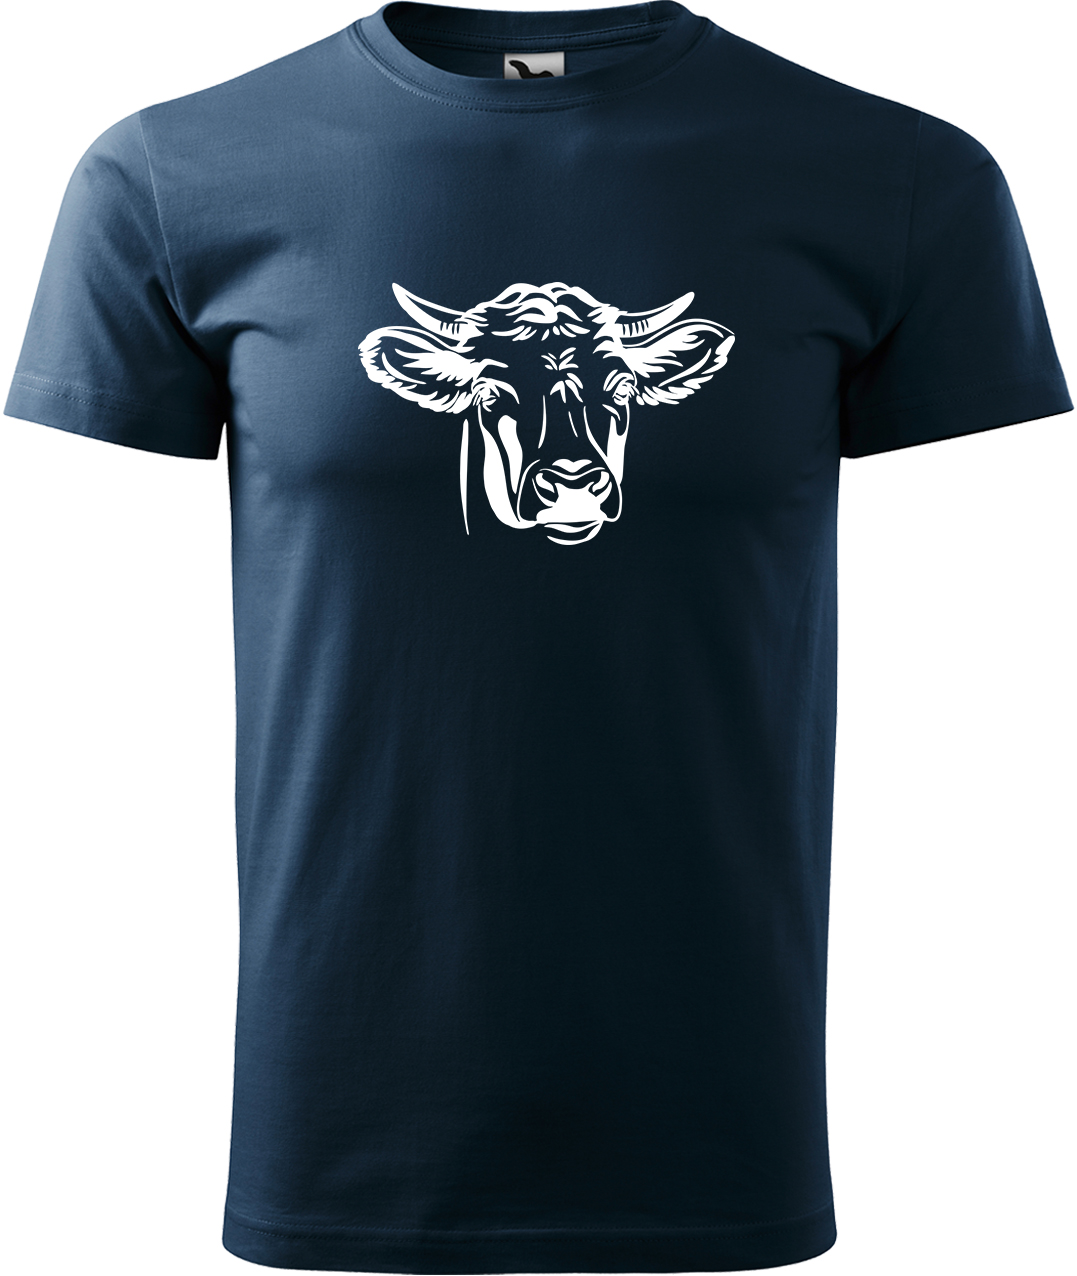 Pánské tričko s krávou - Hlava krávy Velikost: XL, Barva: Námořní modrá (02), Střih: pánský